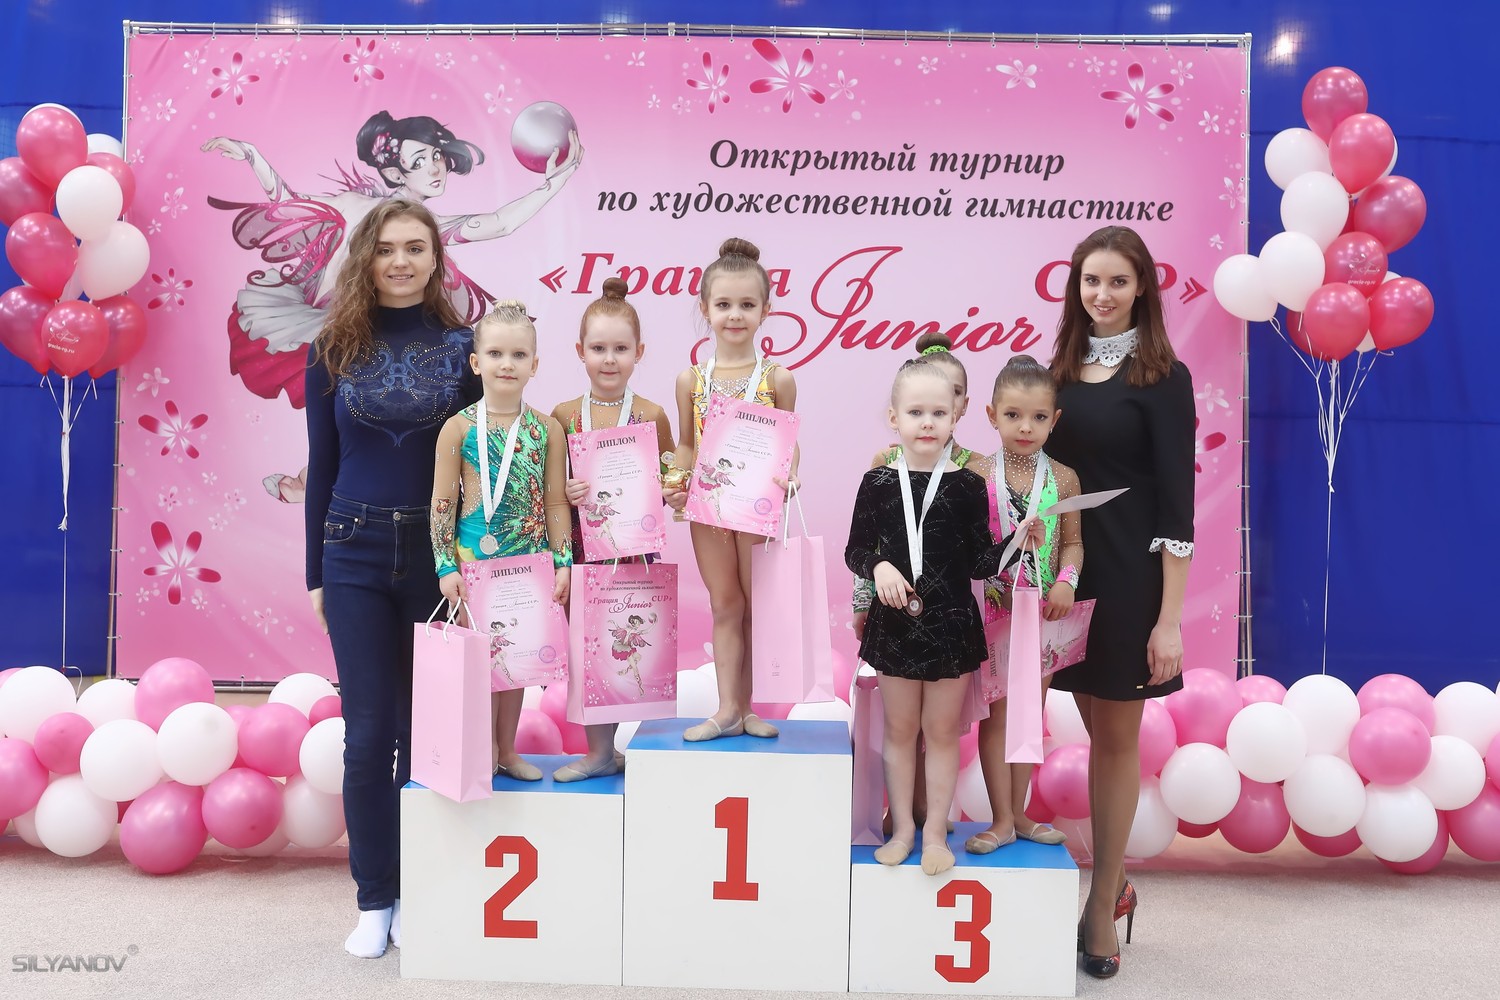 Грация Junior Cup (11 февраля г.Москва)